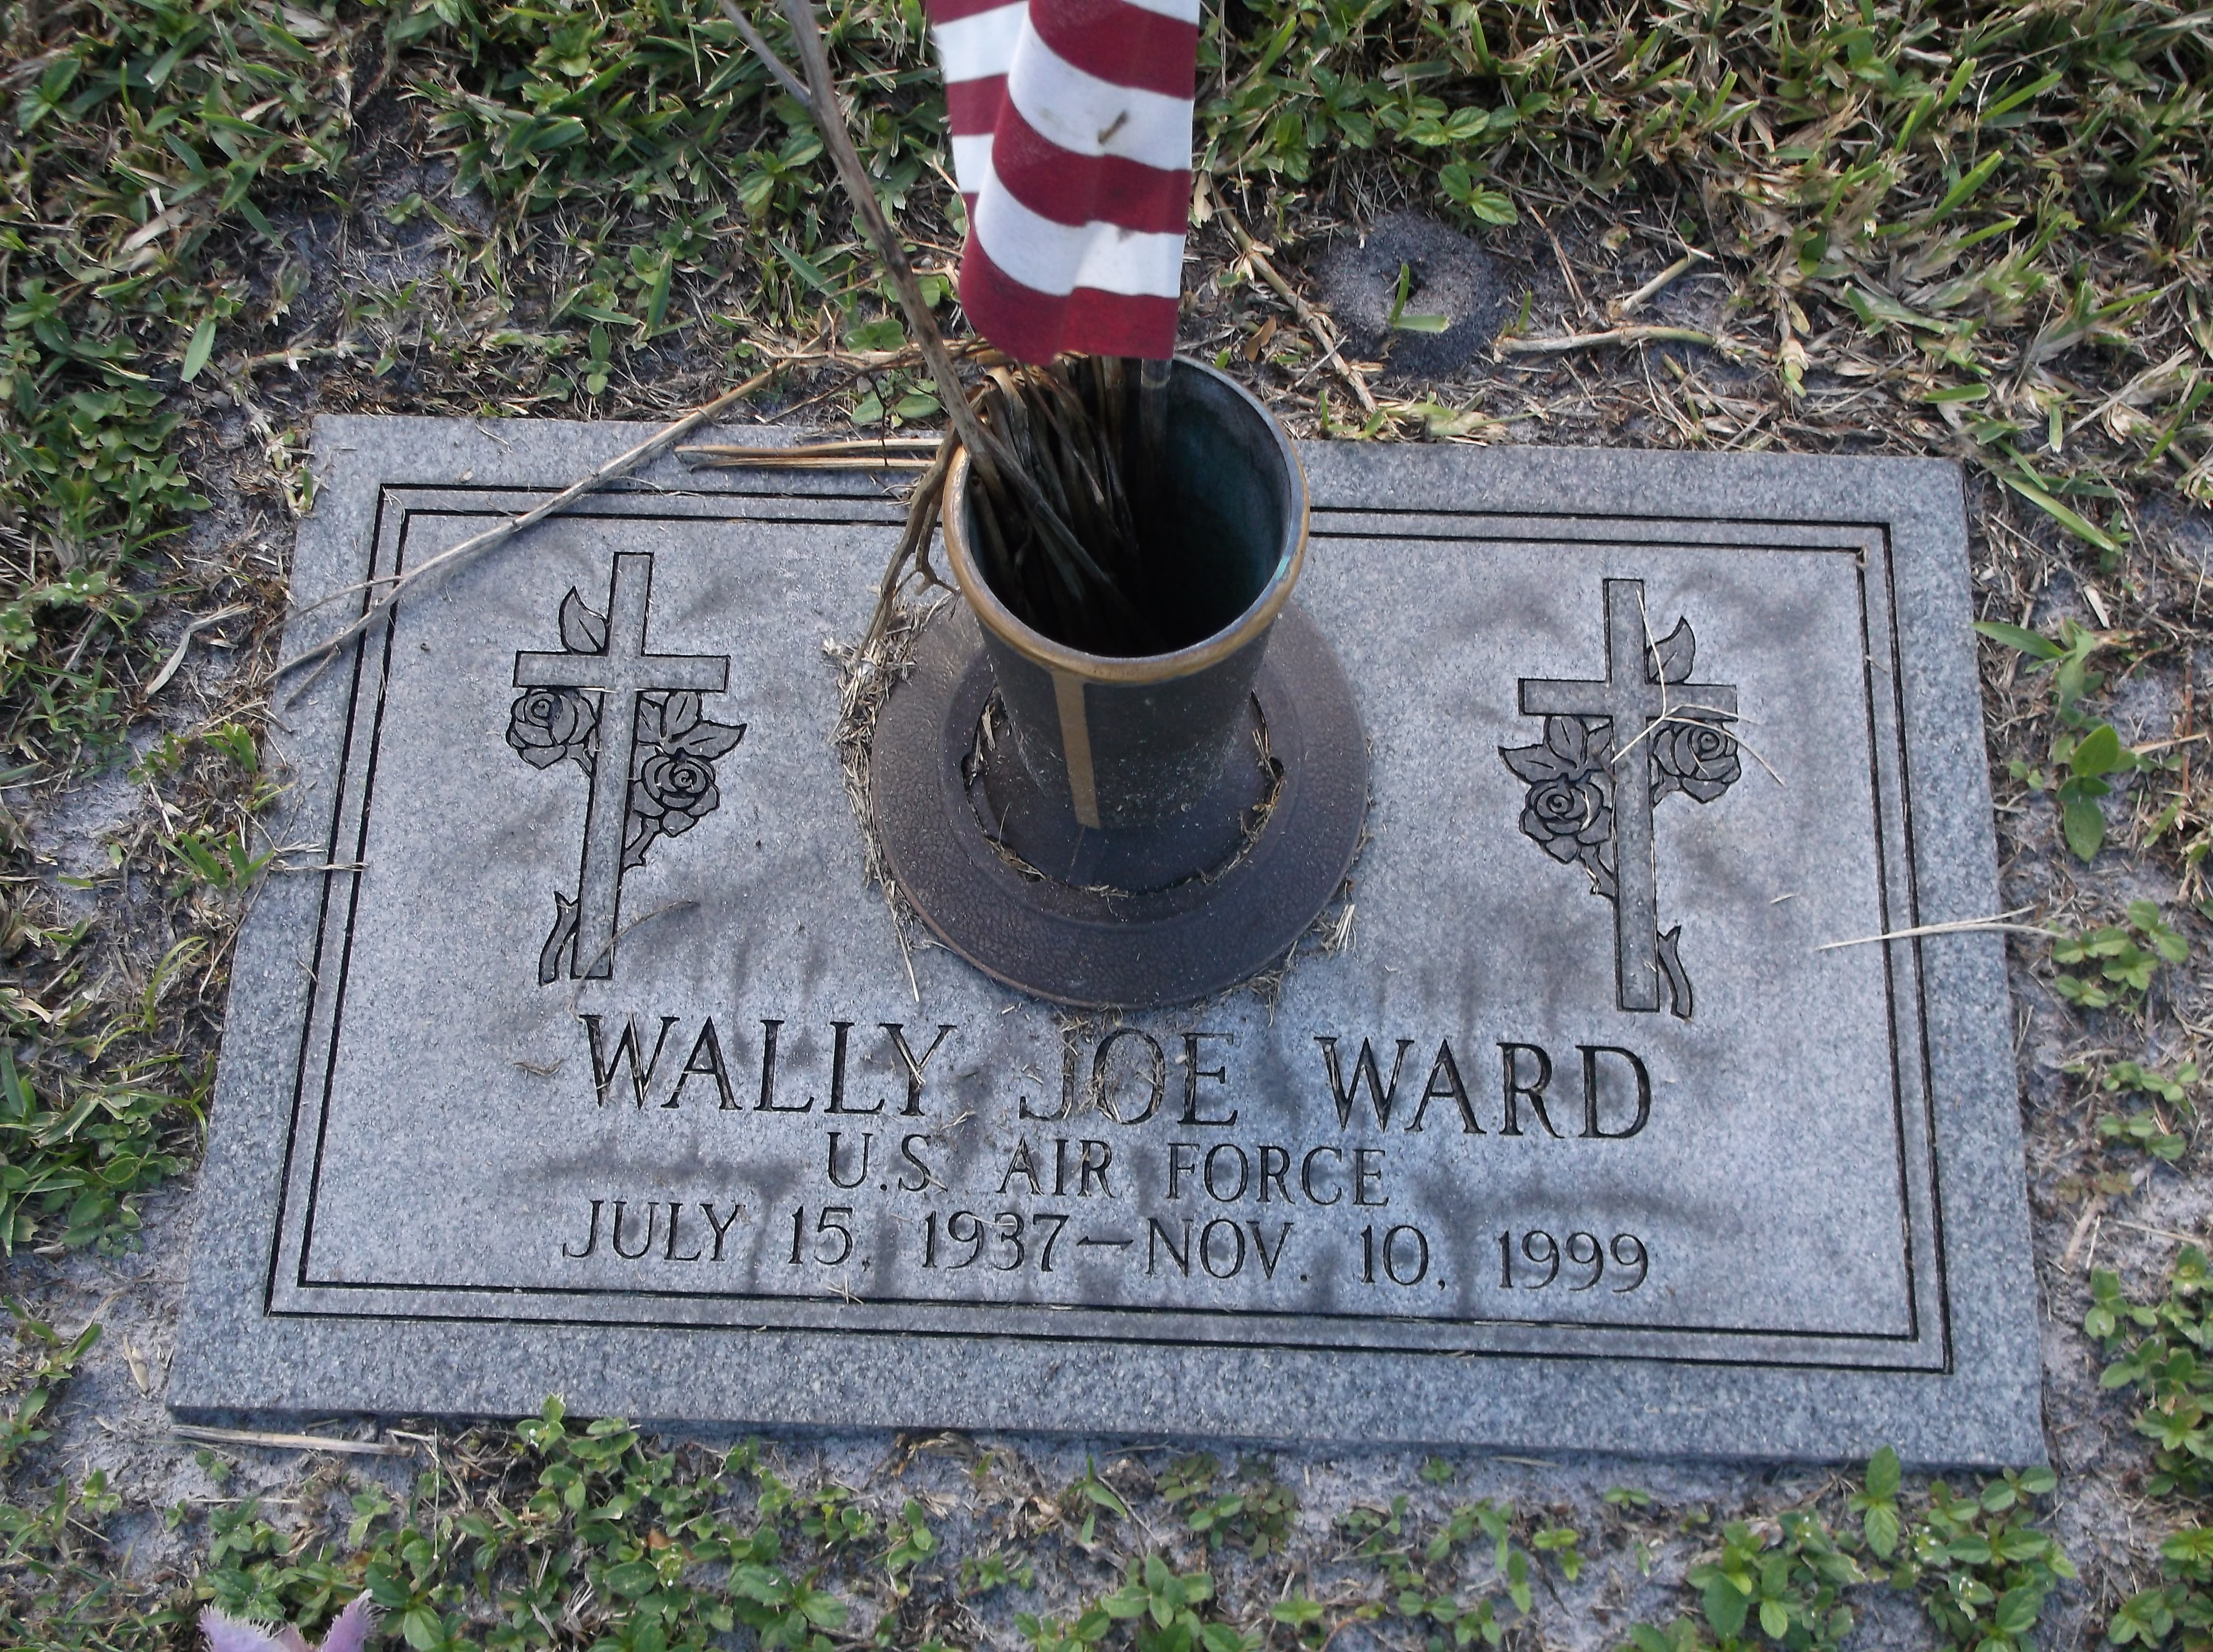 Wally Joe Ward